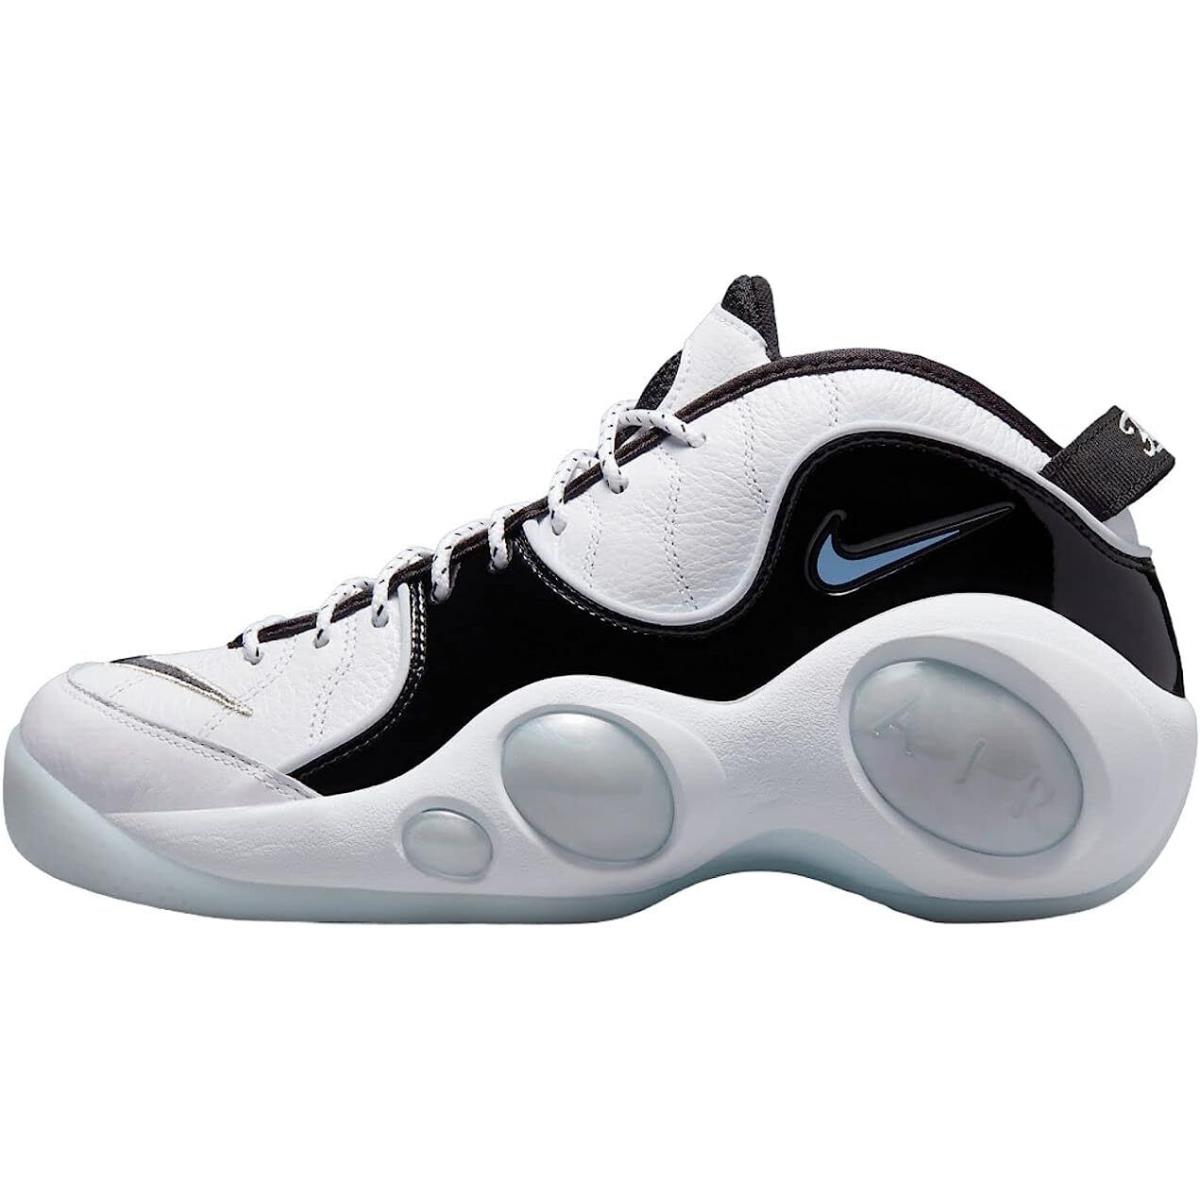 Nike Air Zoom Flight 95 OG Men`s Basketball Shoes - White/Multi-color/Black/Football Grey